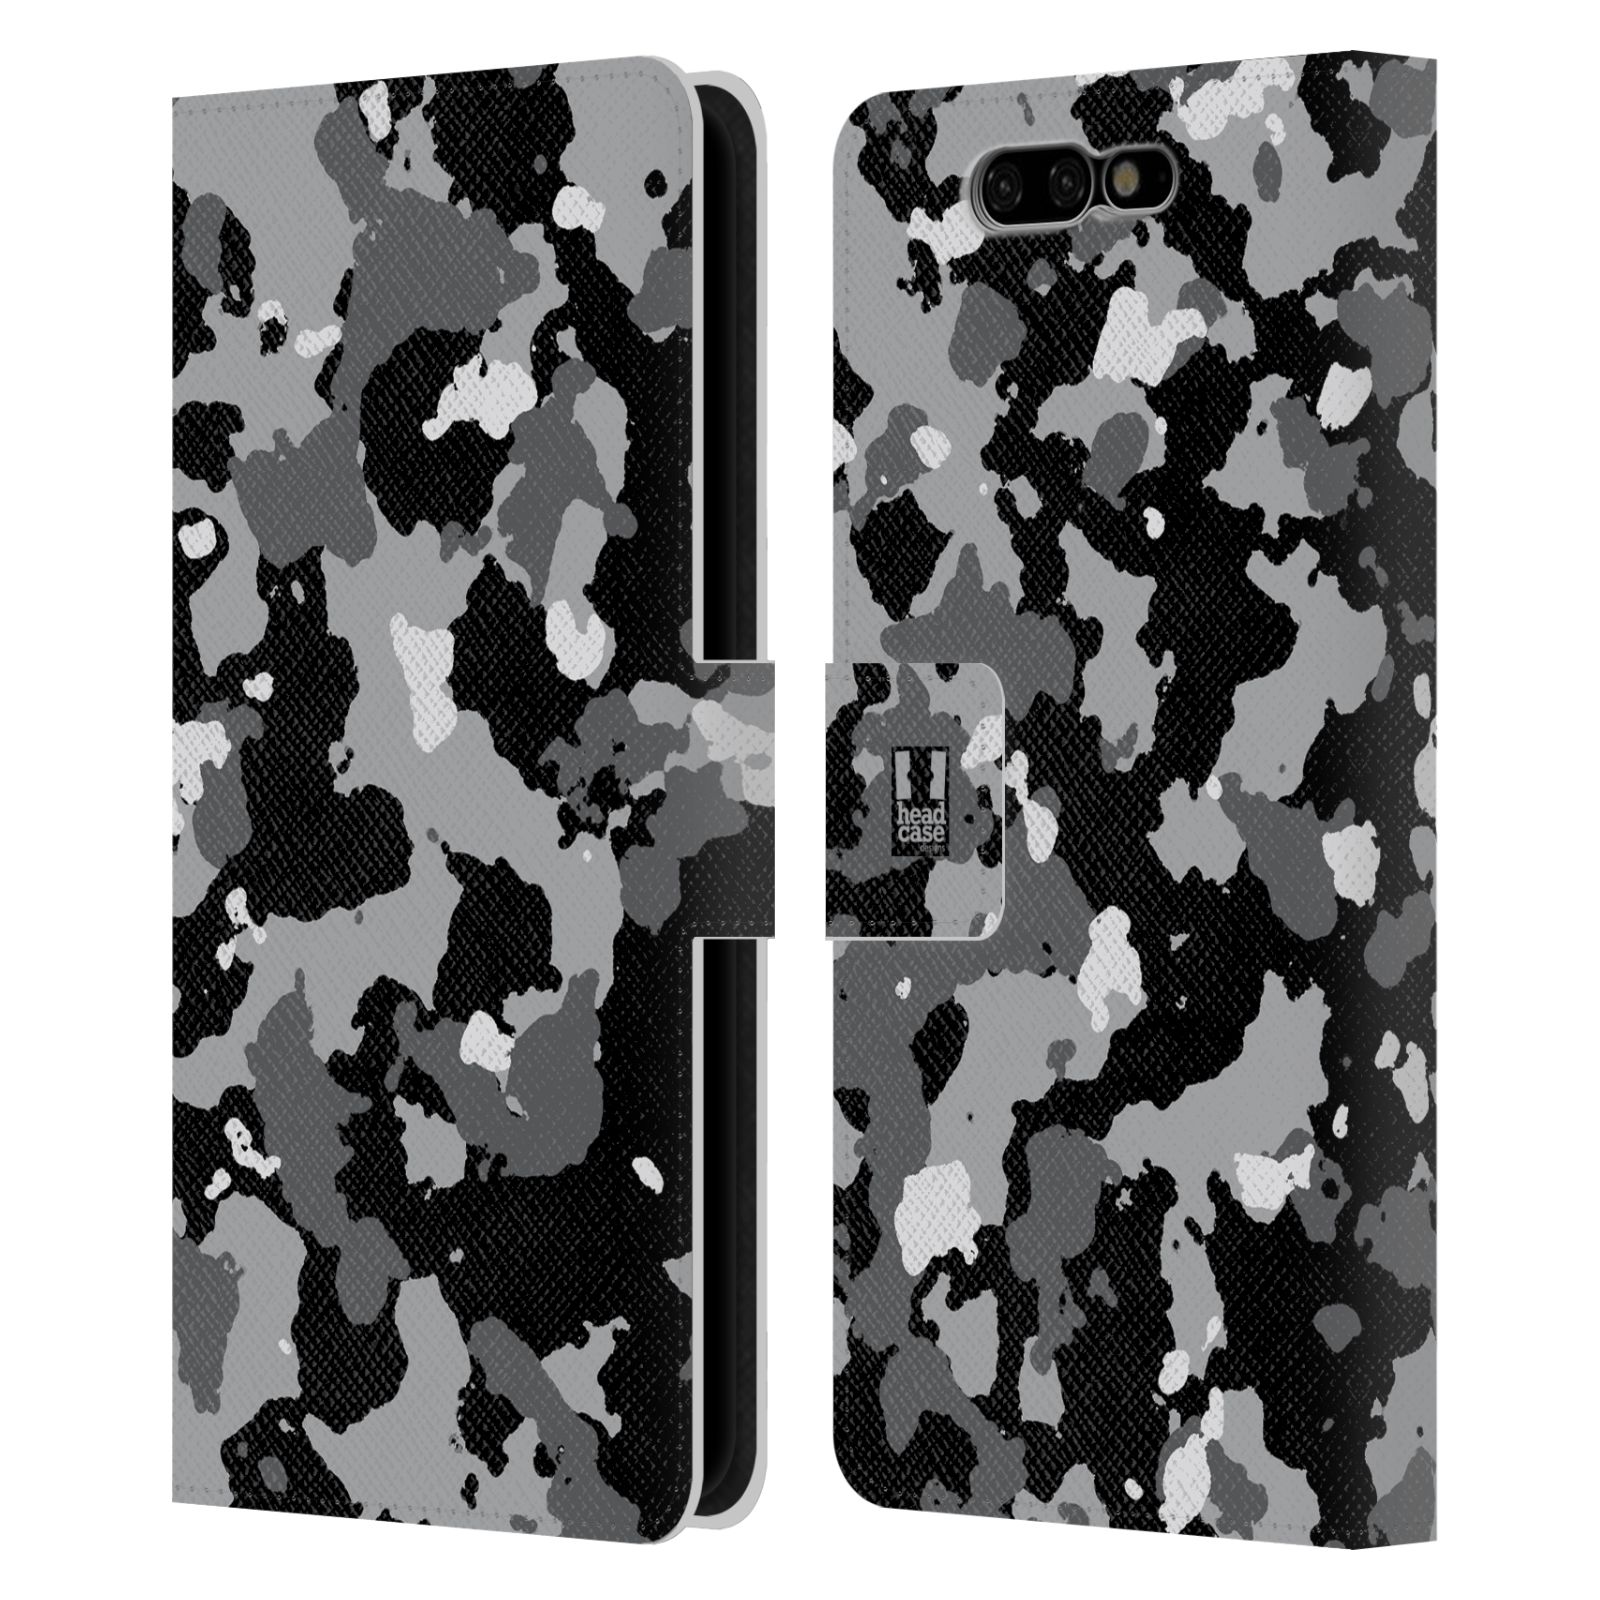 Pouzdro na mobil Xiaomi Black Shark - Head Case - kamuflaž černá a šedá